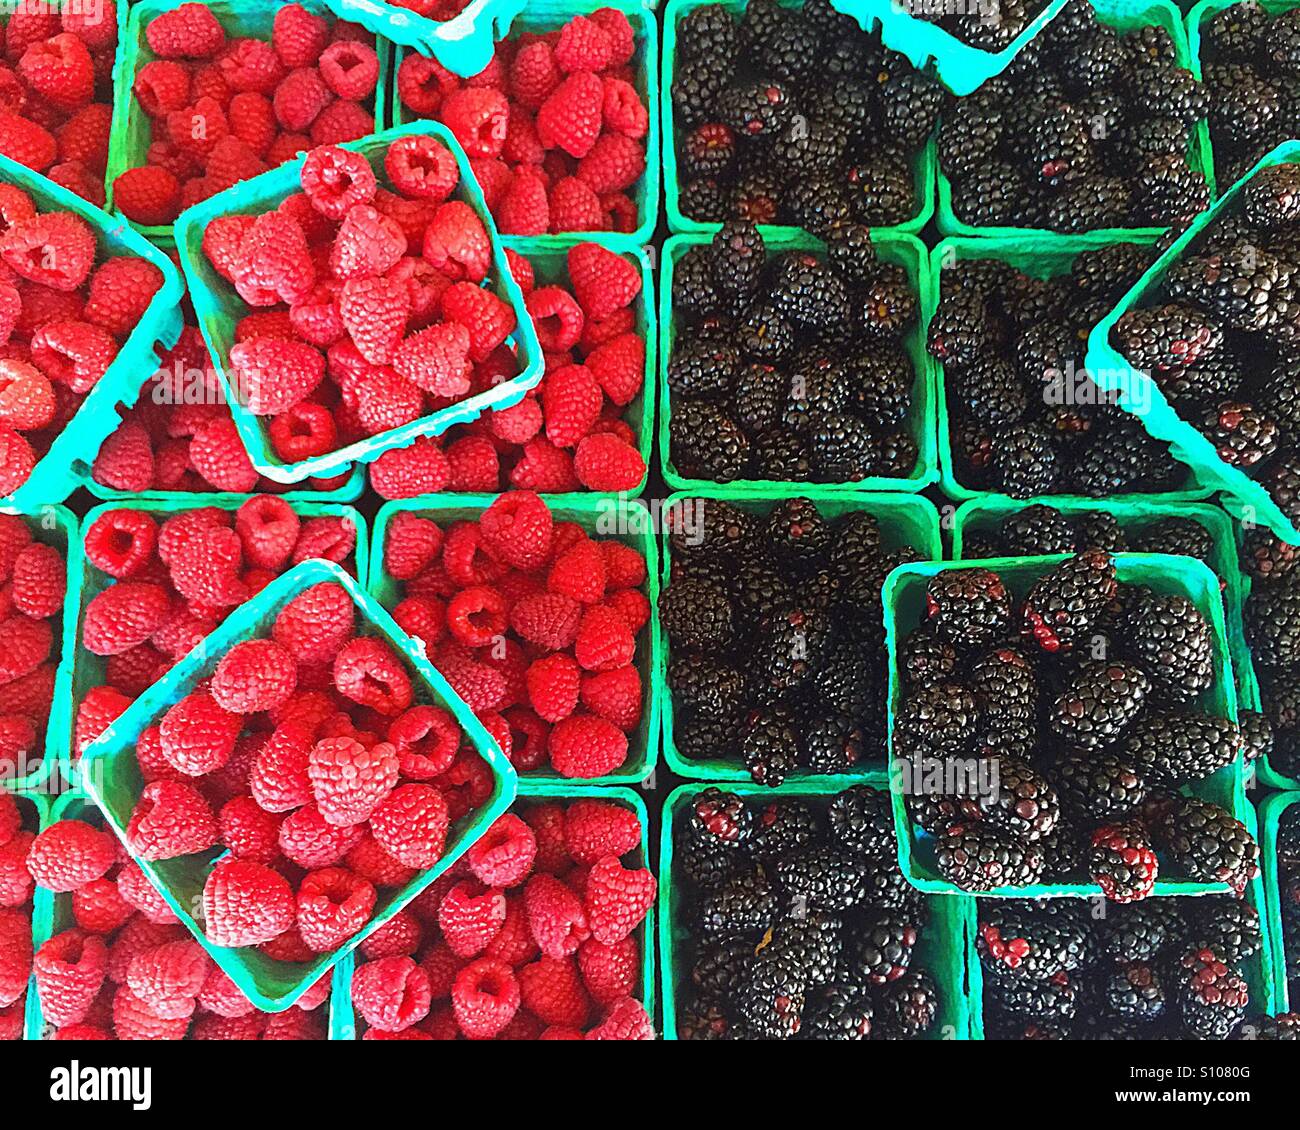 Lampone vs Blackberry, bel colore e frutta fresca. Foto Stock